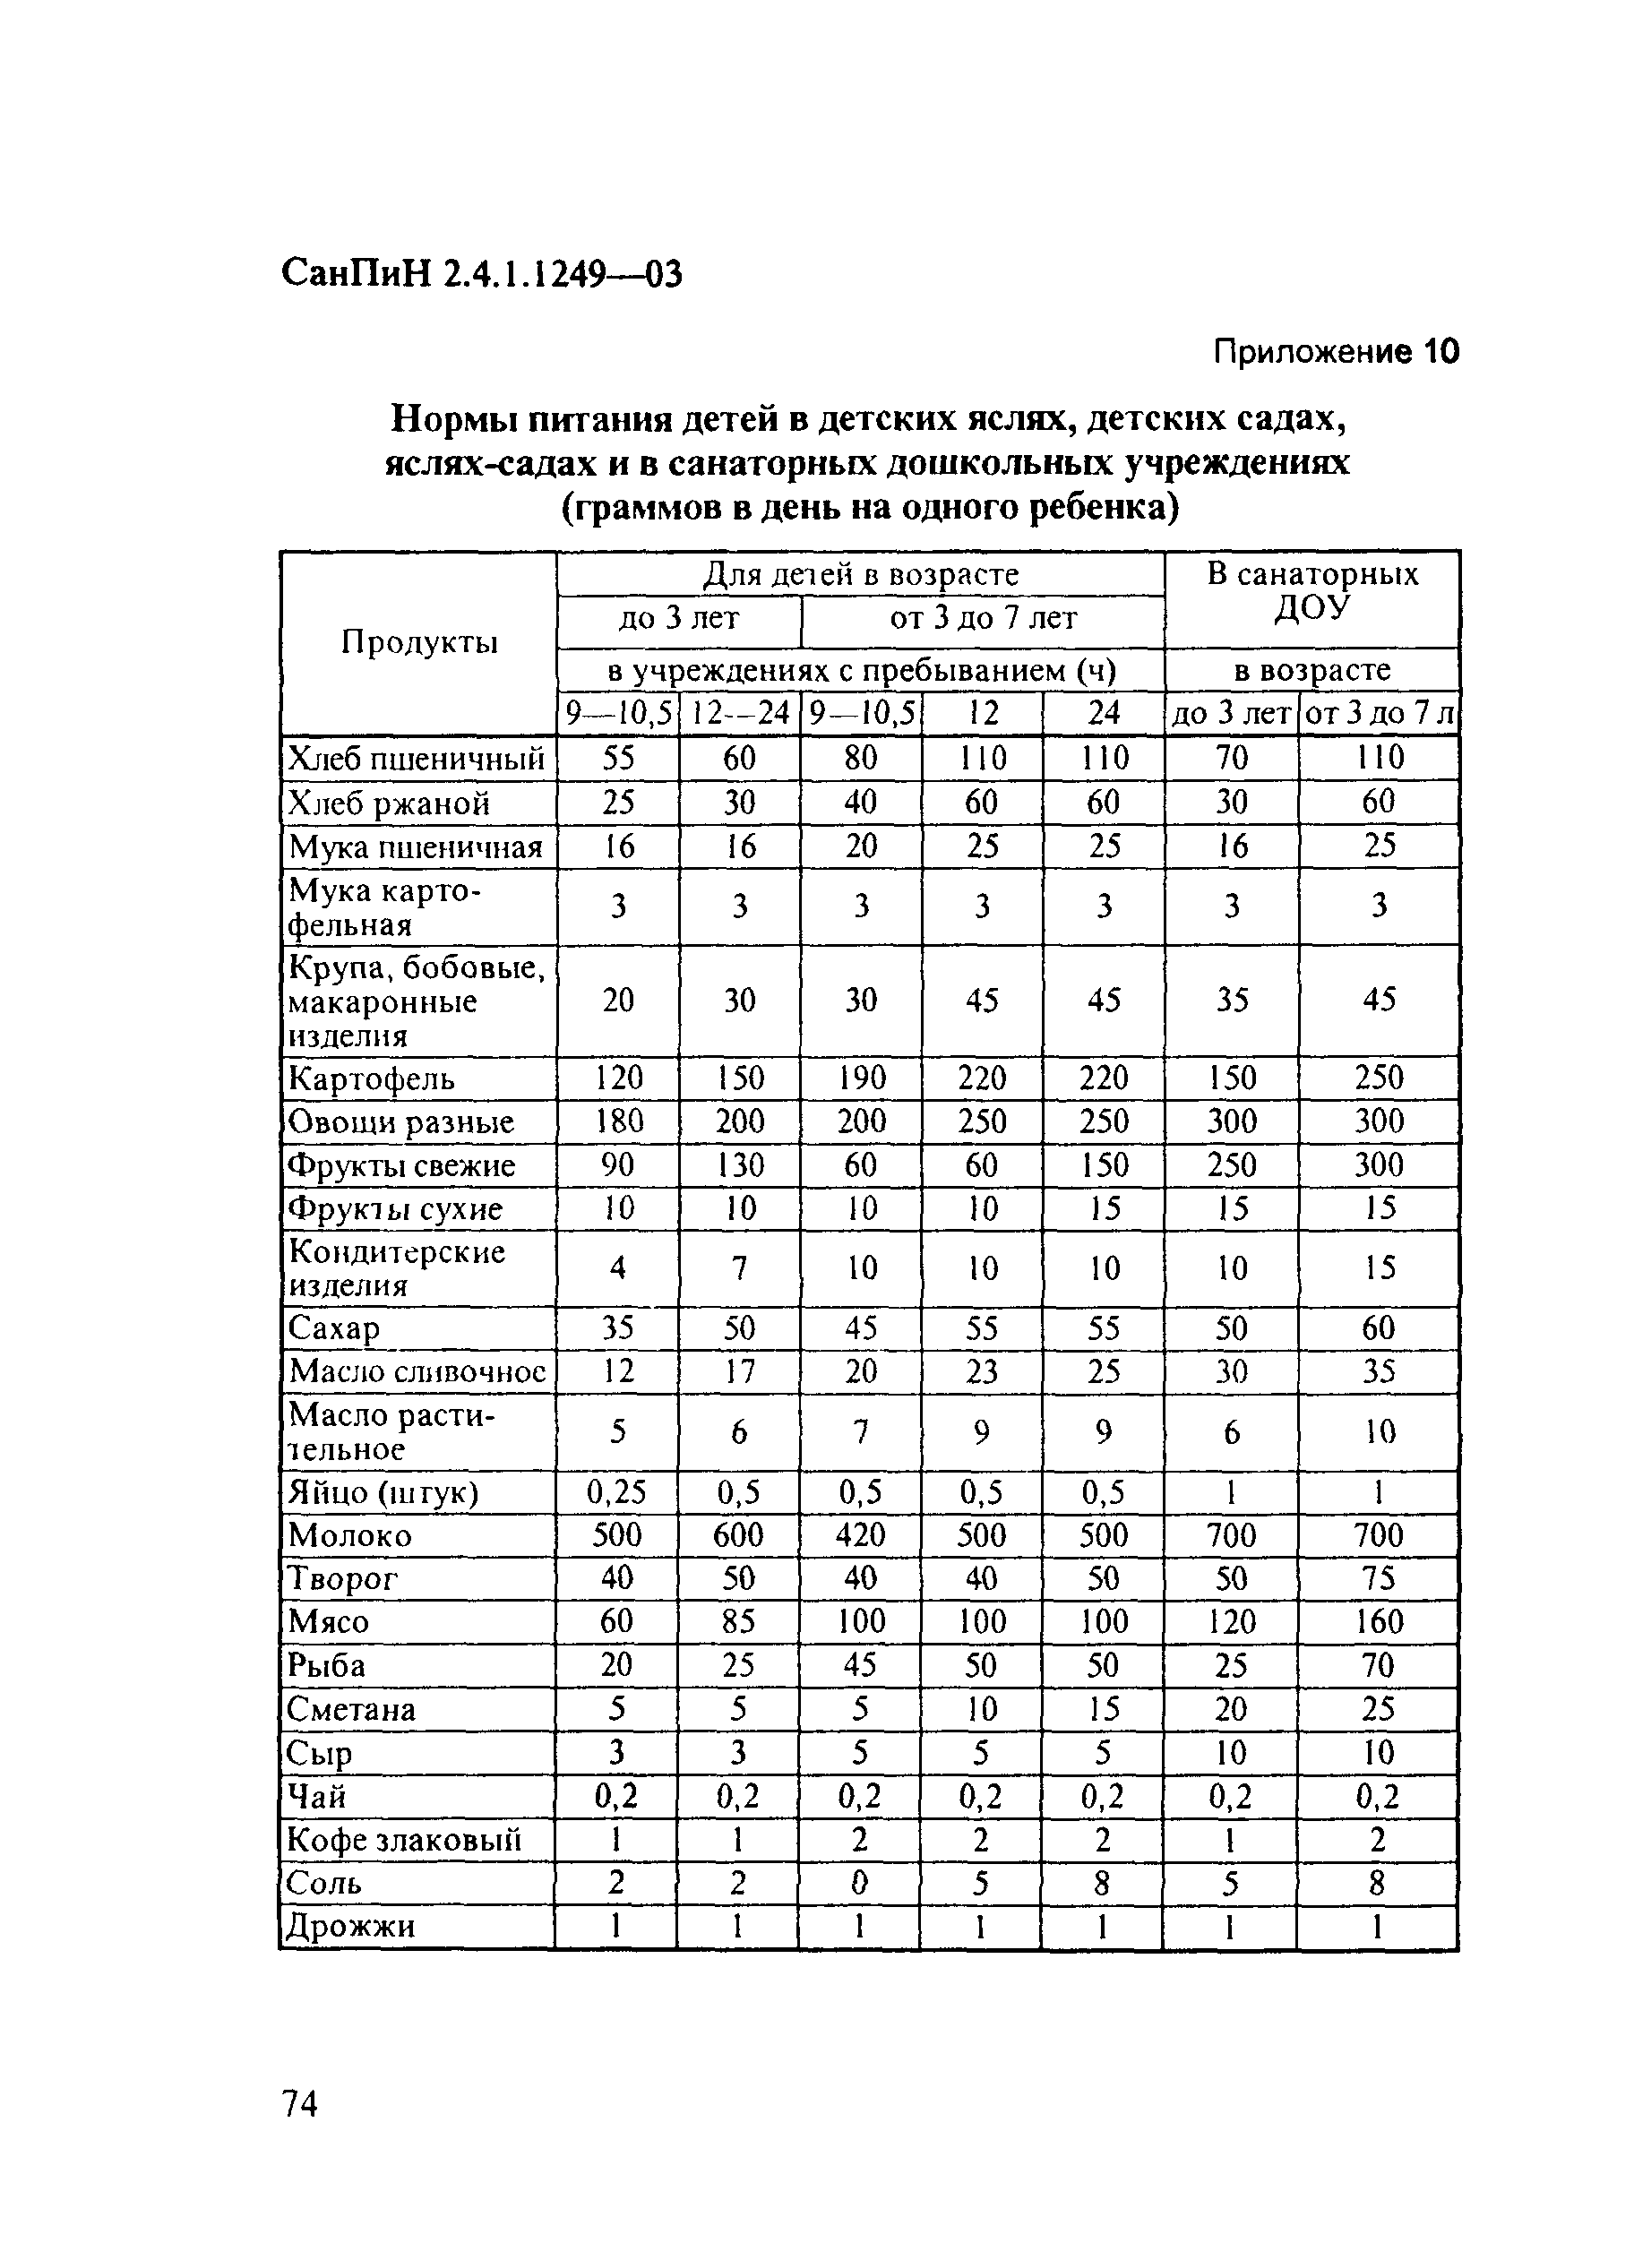 Нормы в детском саду по новому САНПИН 2021 таблица